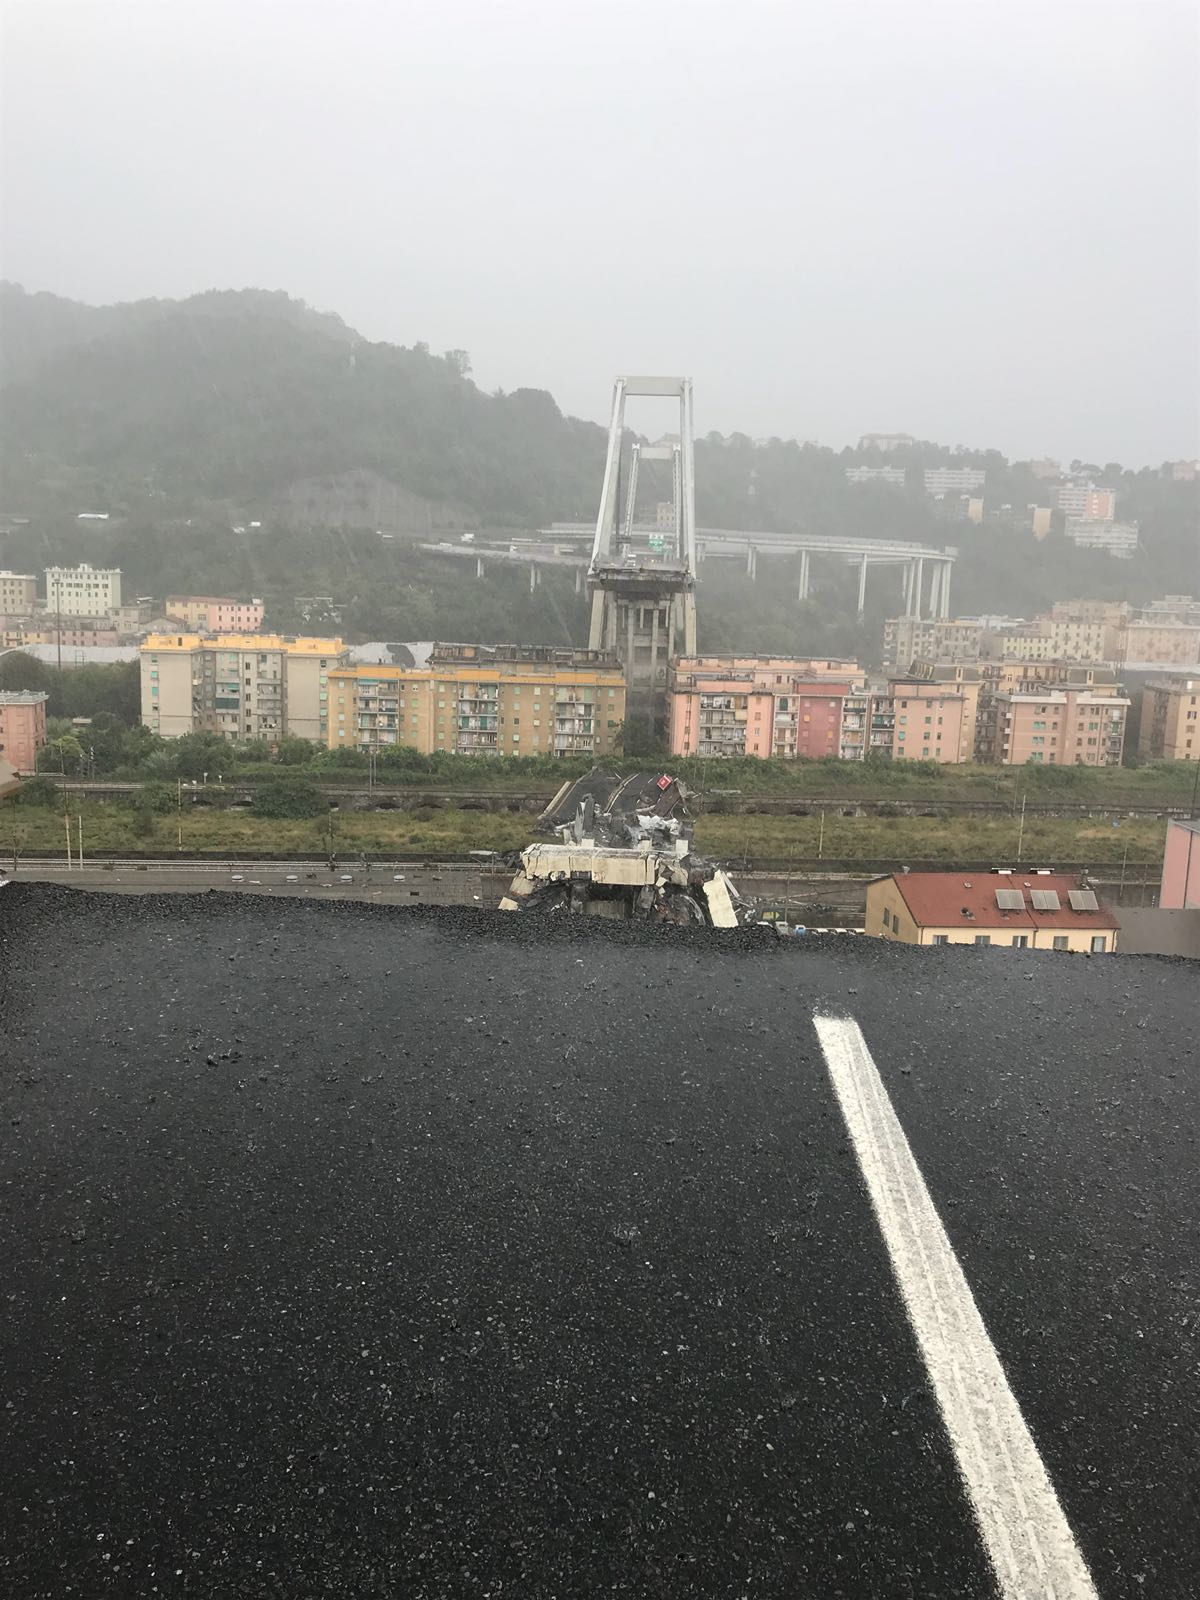 Ponte crollato a Genova, si cerca sotto le macerie: il video